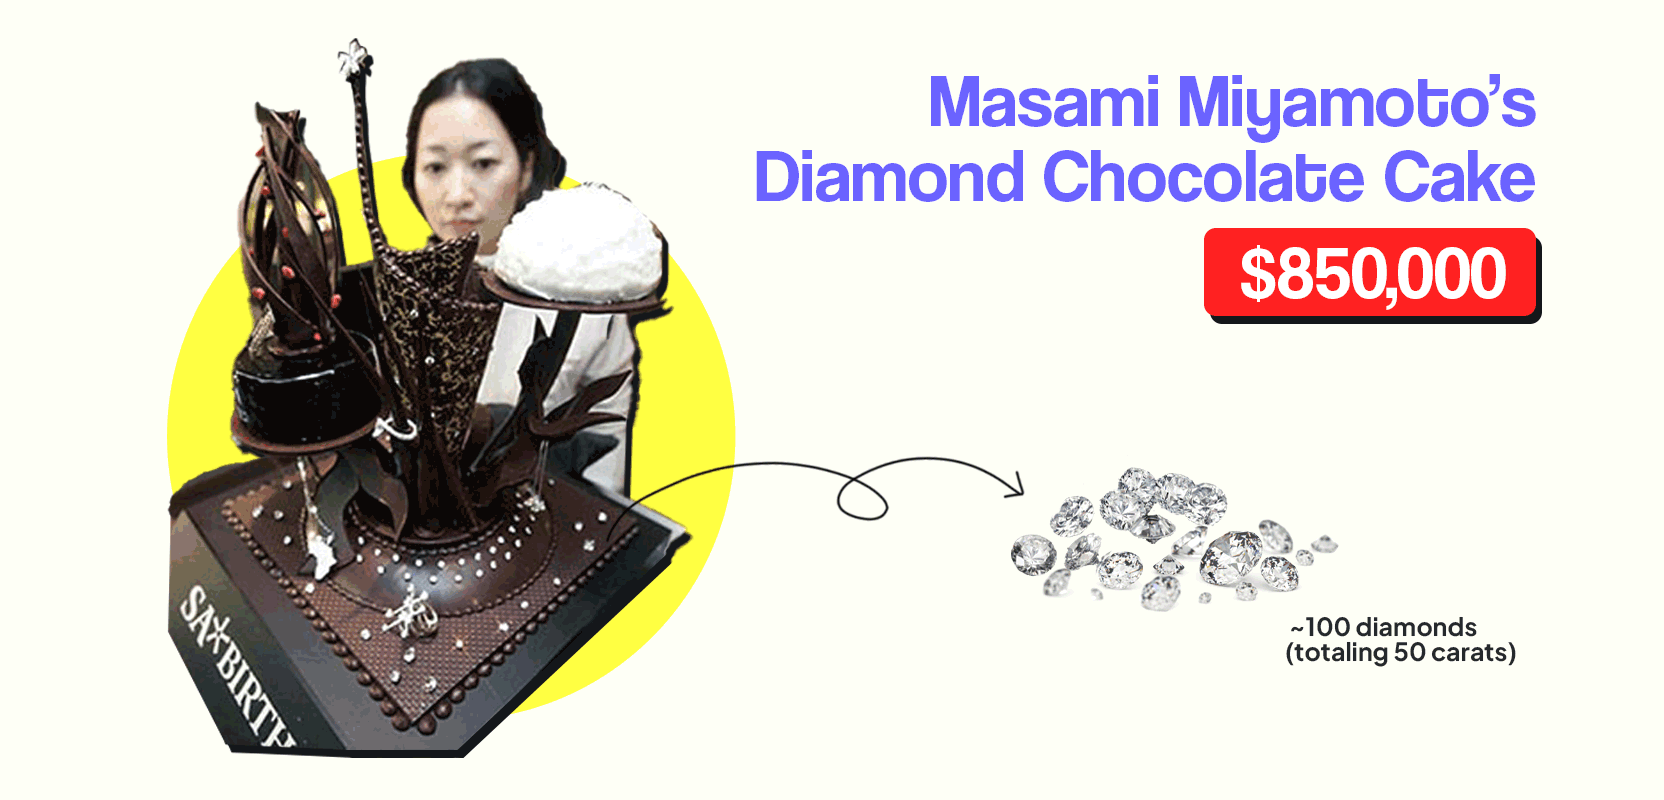 Masami Miyamoto's diamond chocolate cake